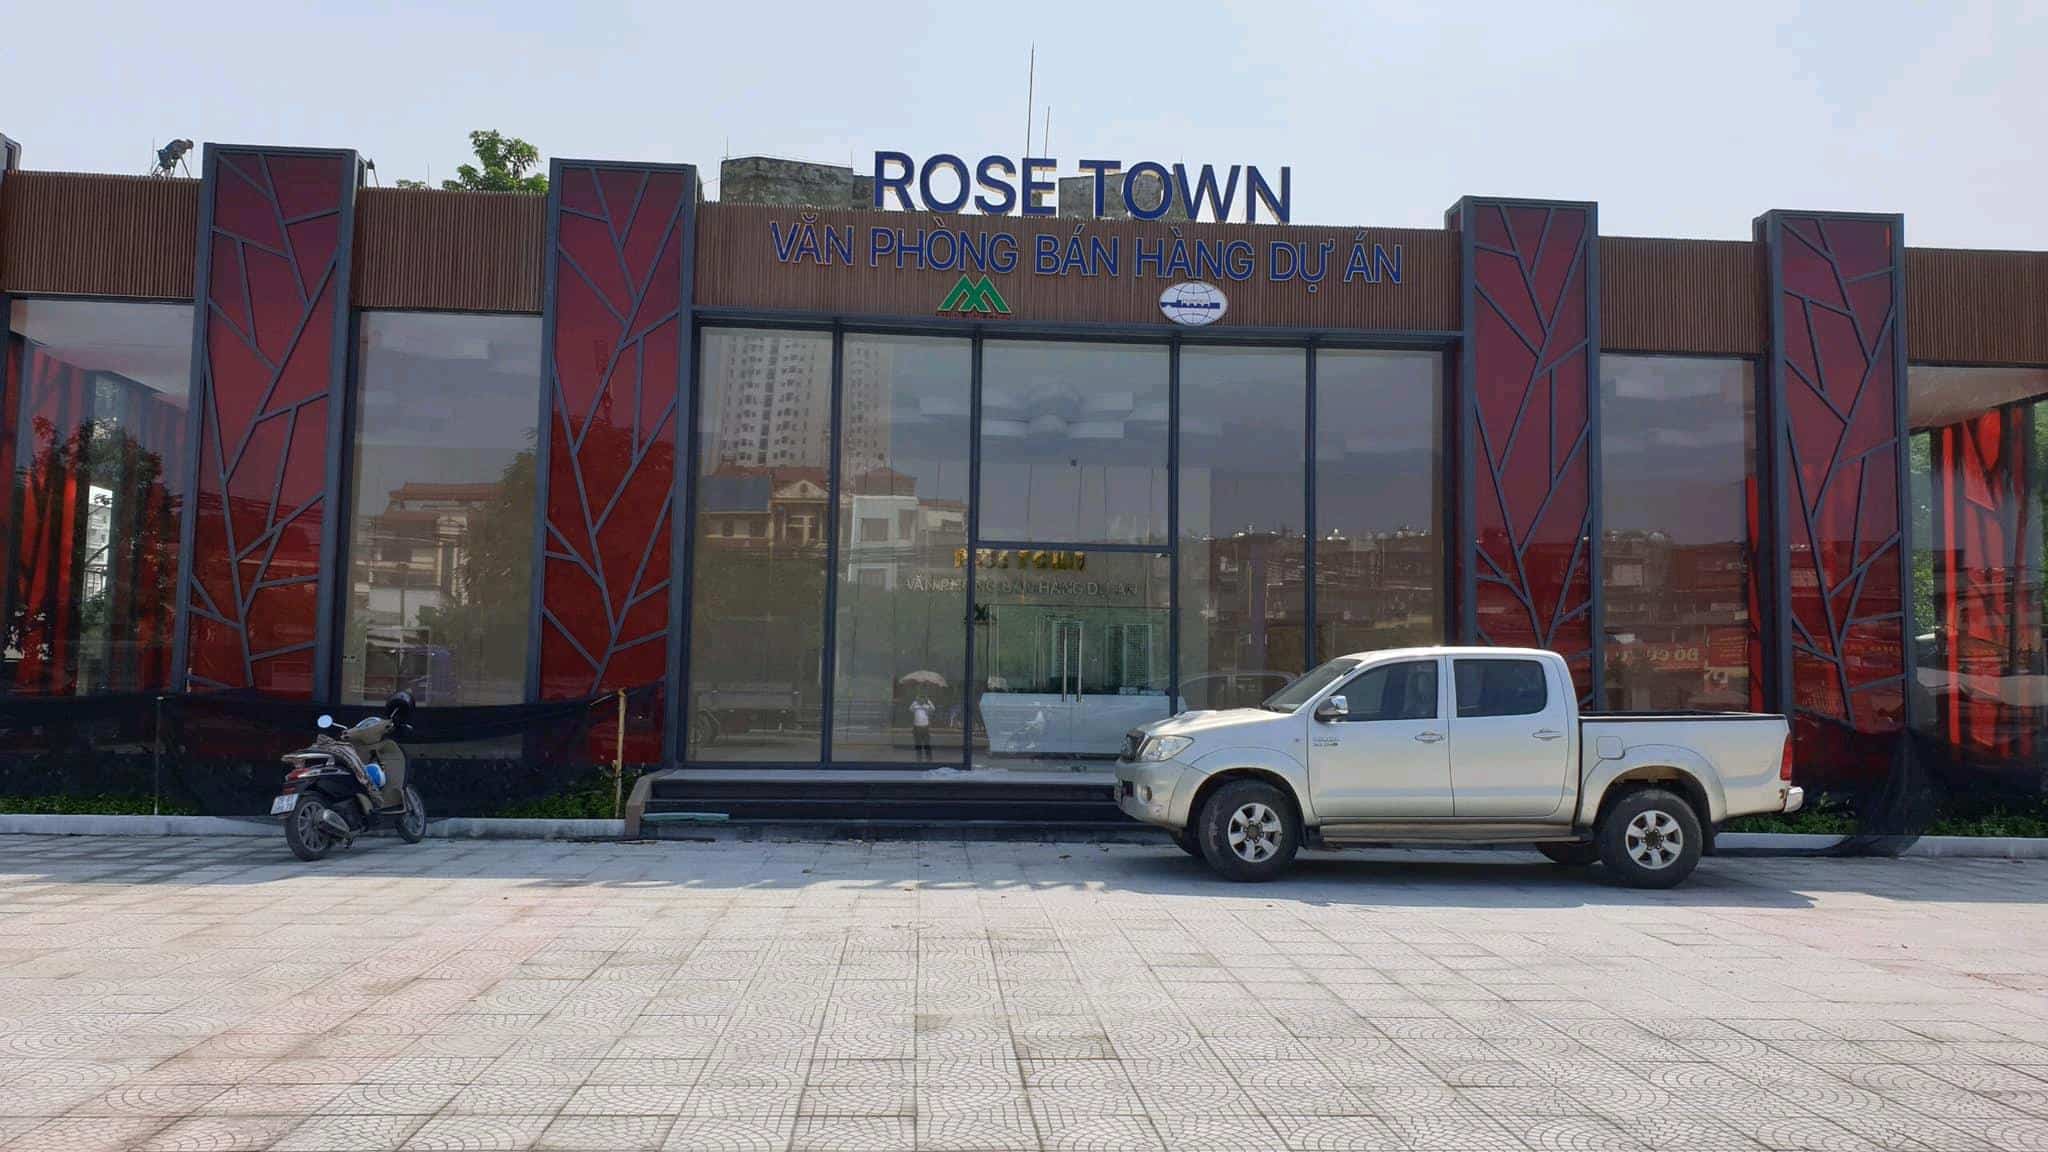 Phòng bán hàng + nhà mẫu Dự án Rose Town kính chào Quý khách